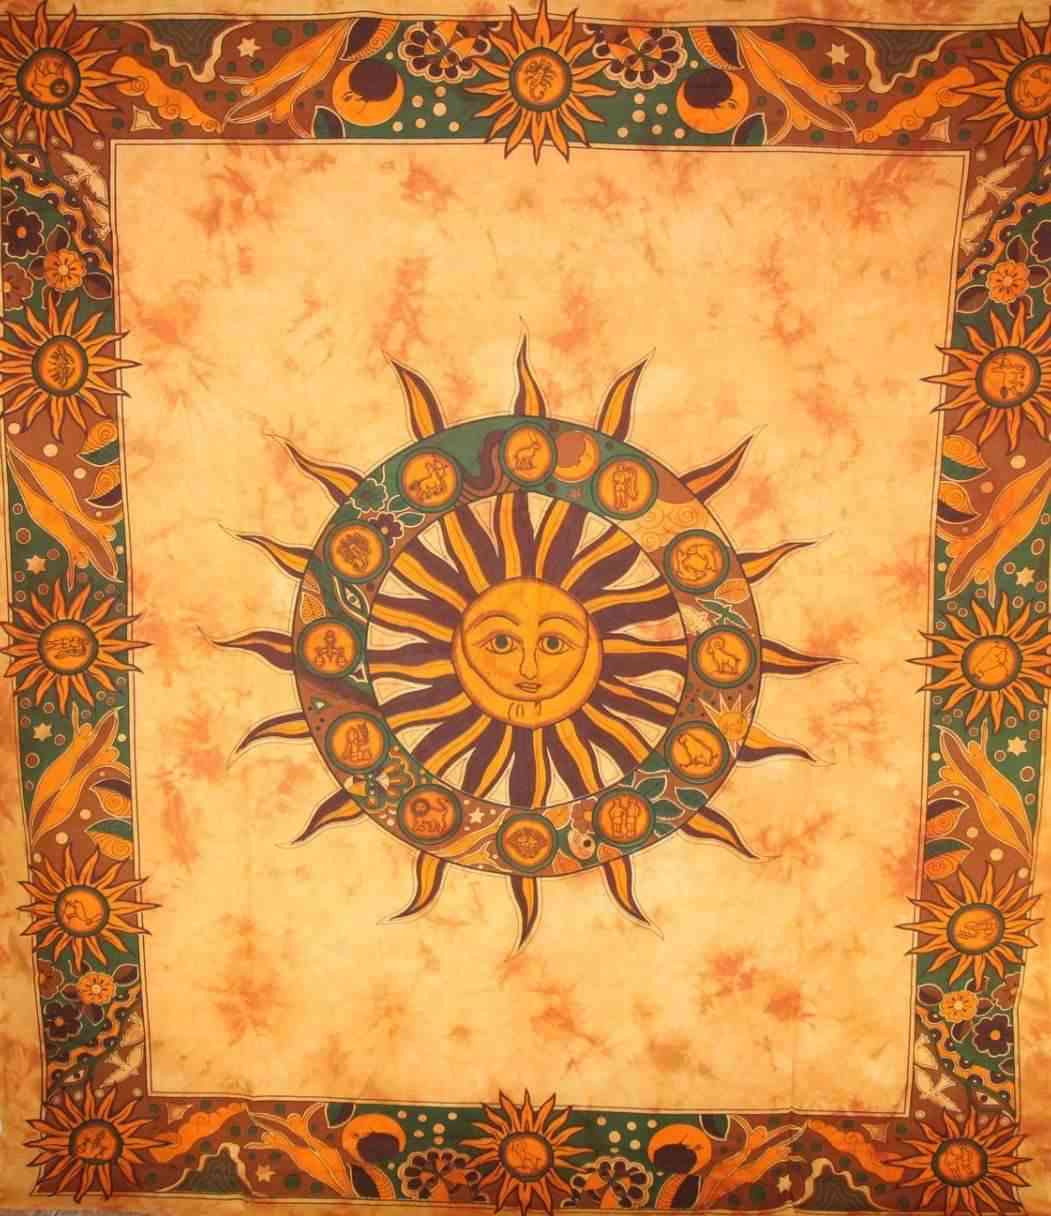 Chacra solar com tapeçaria de doze signos